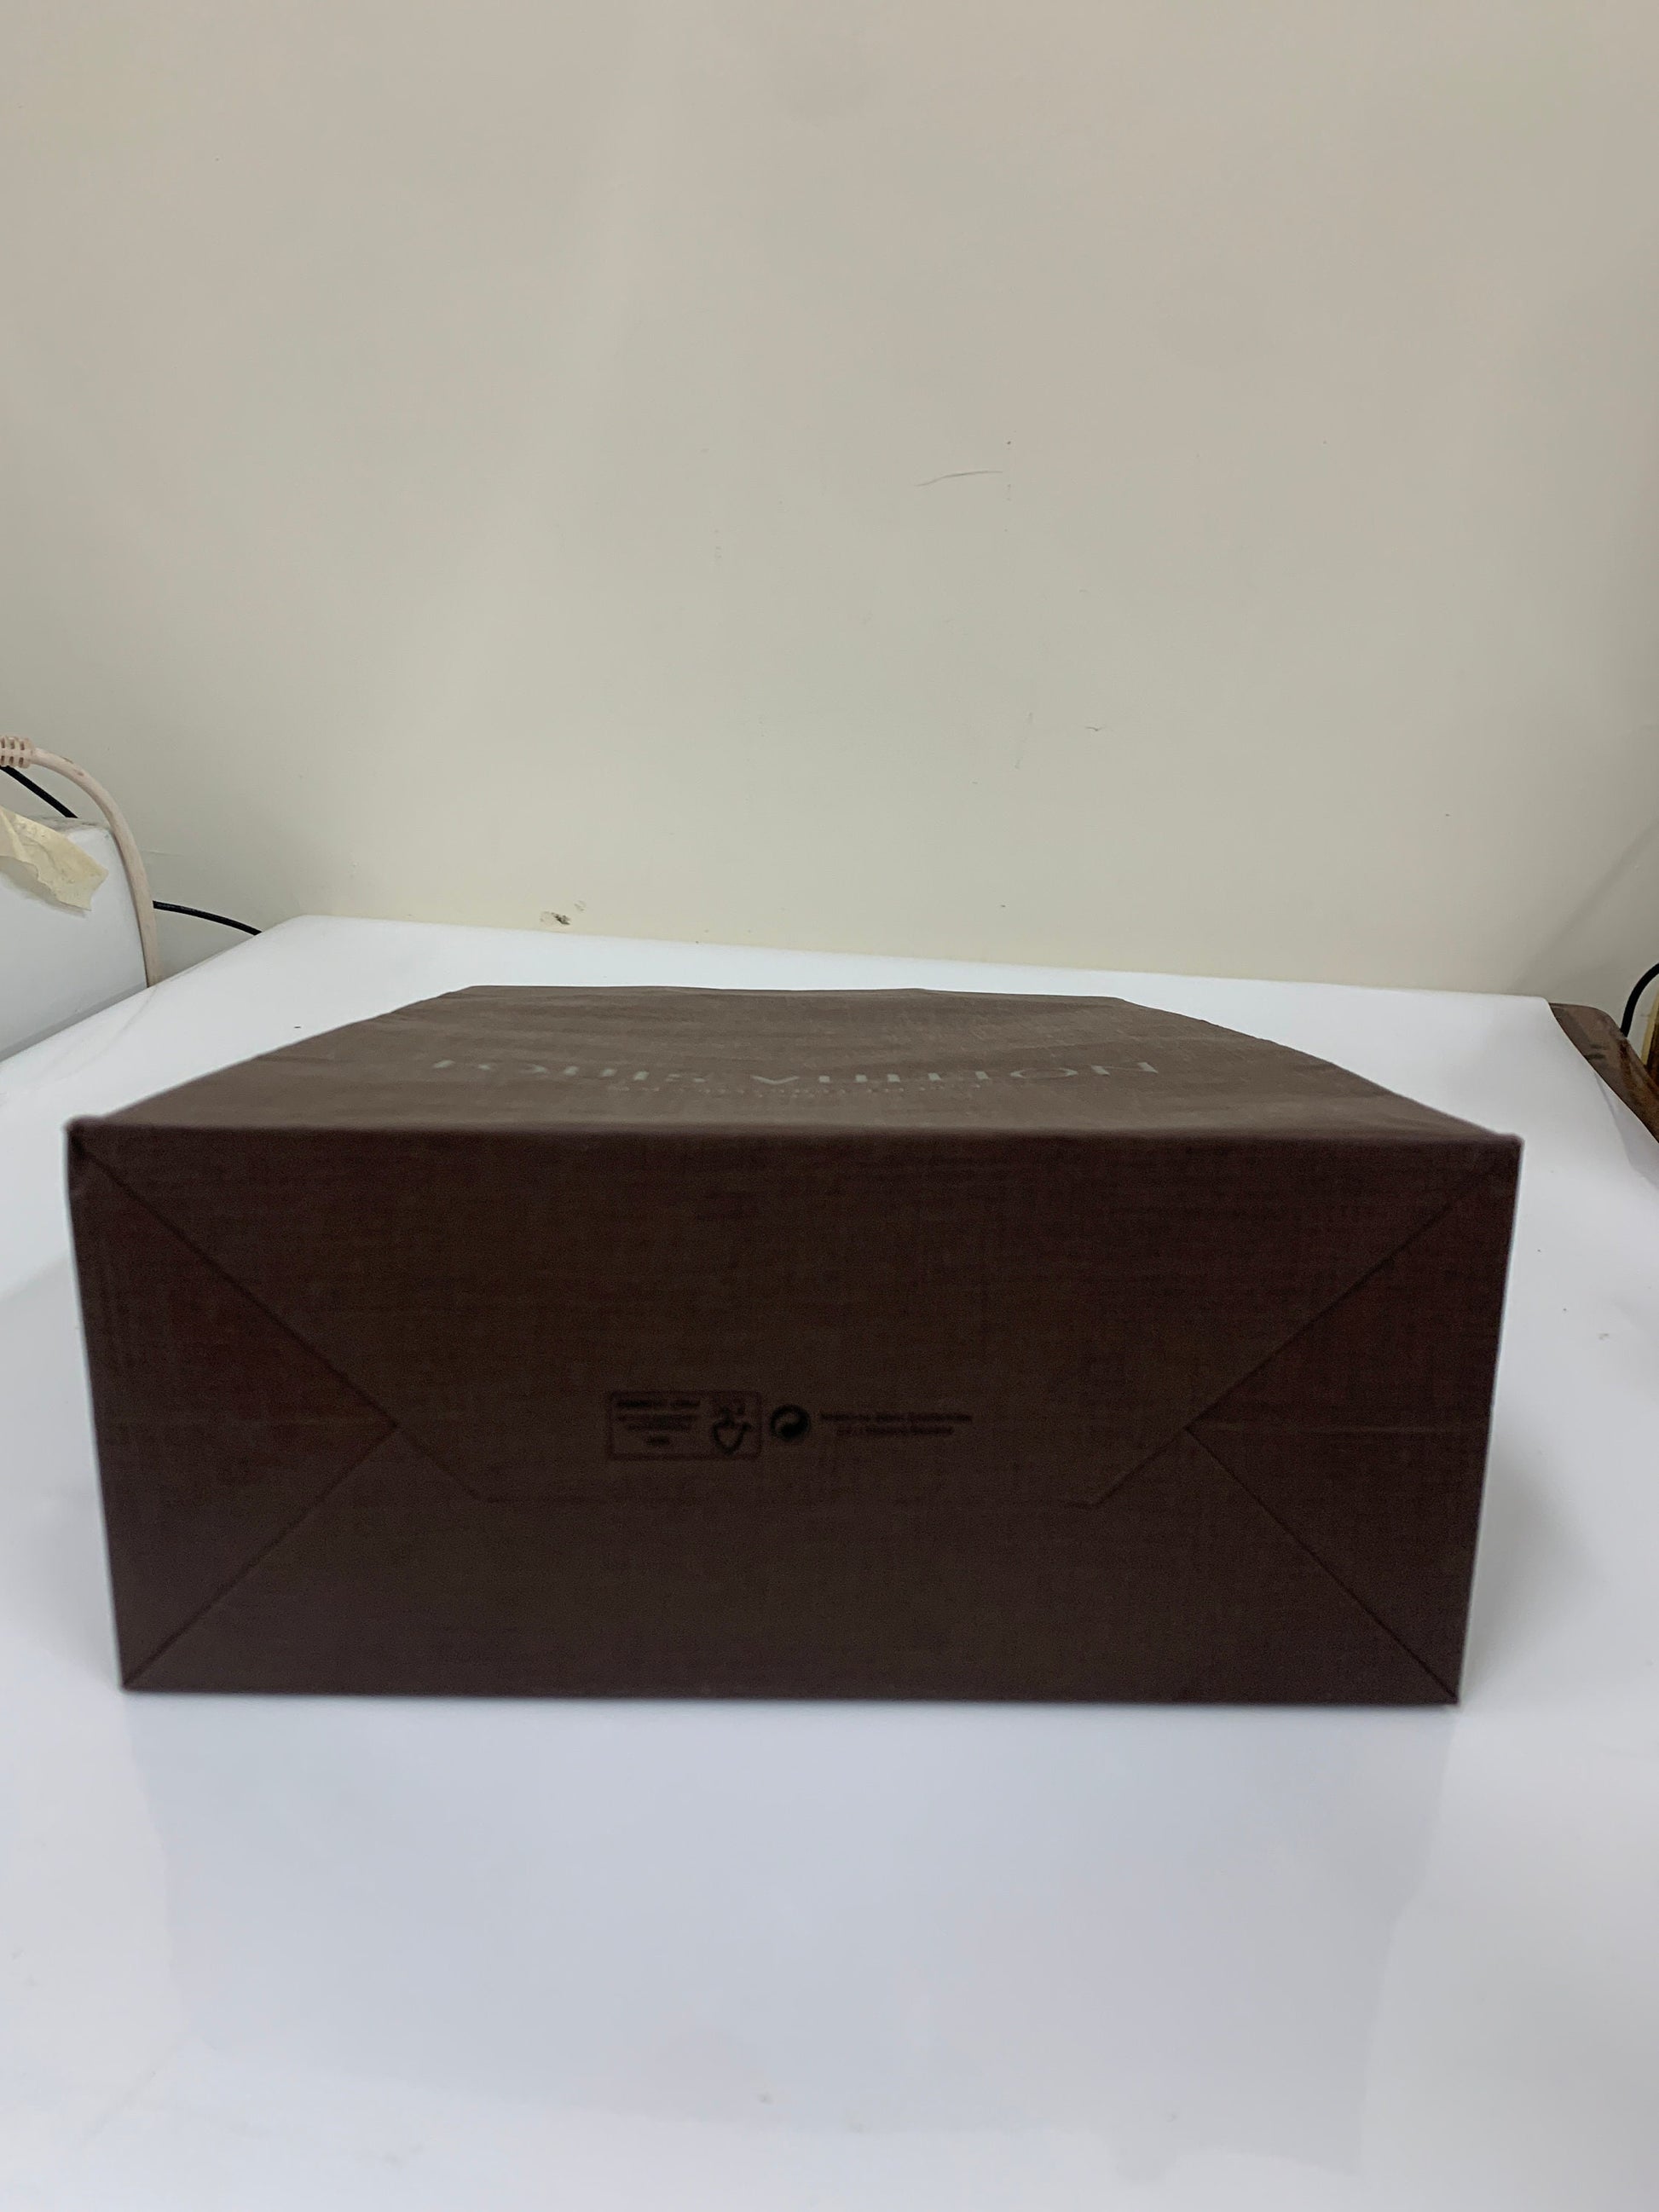 Louis Vuitton, Other, Authentic Louis Vuitton Shoe Box